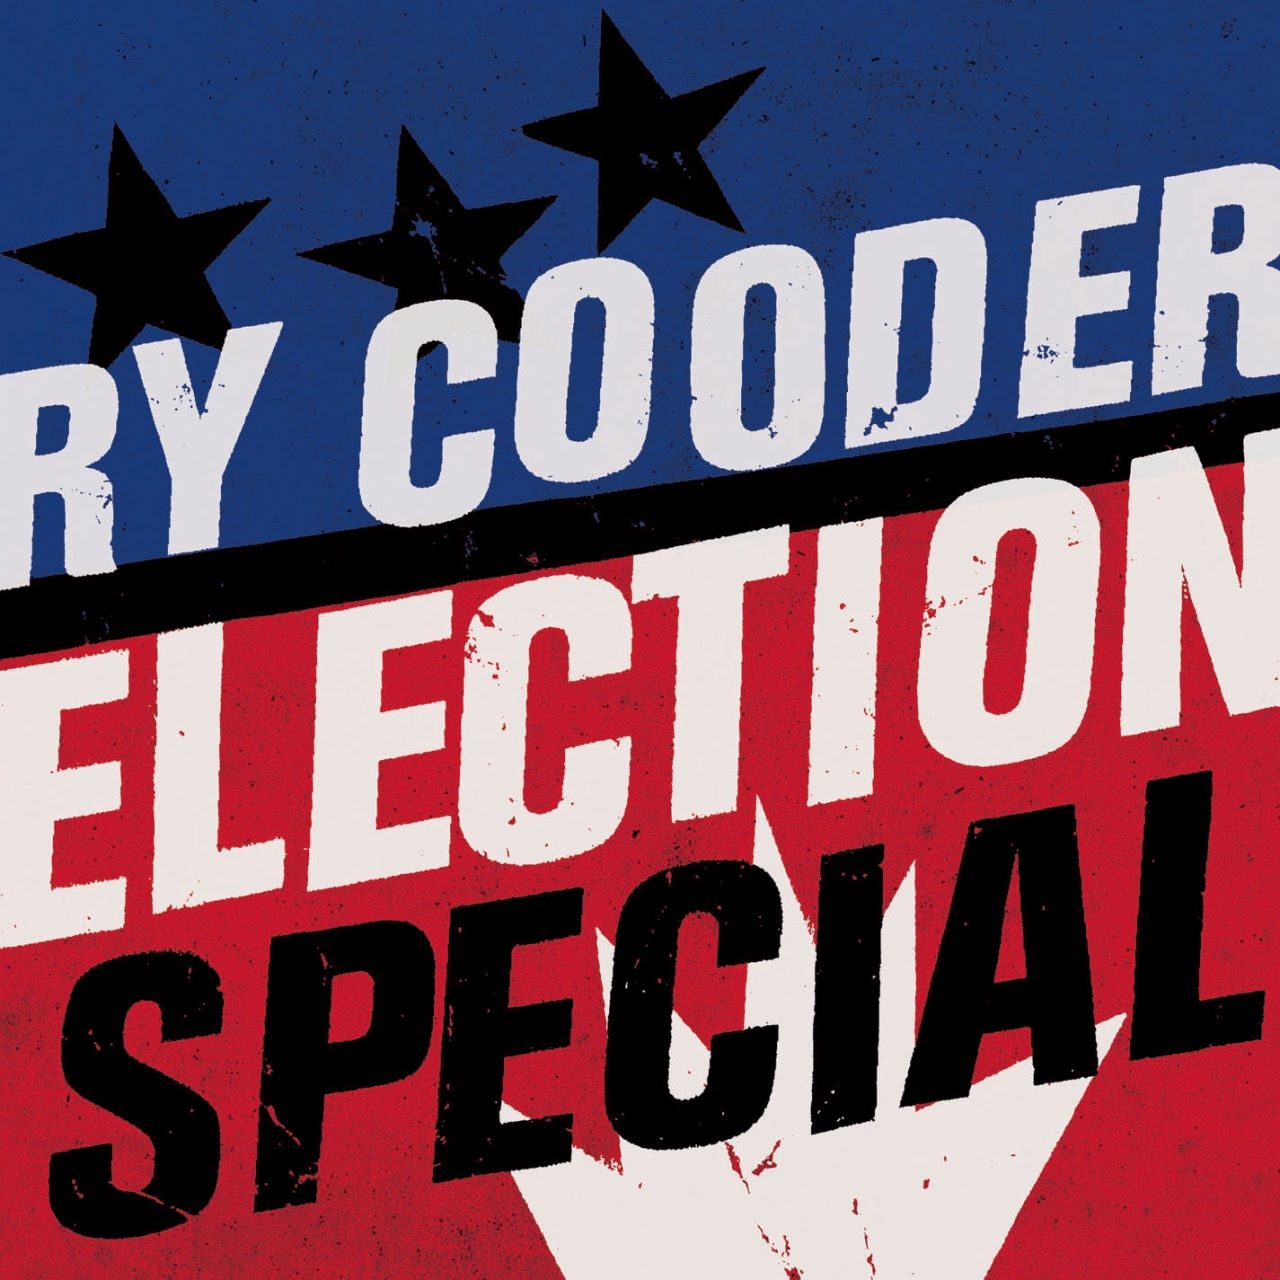 Ry Cooder - Election Special cover album